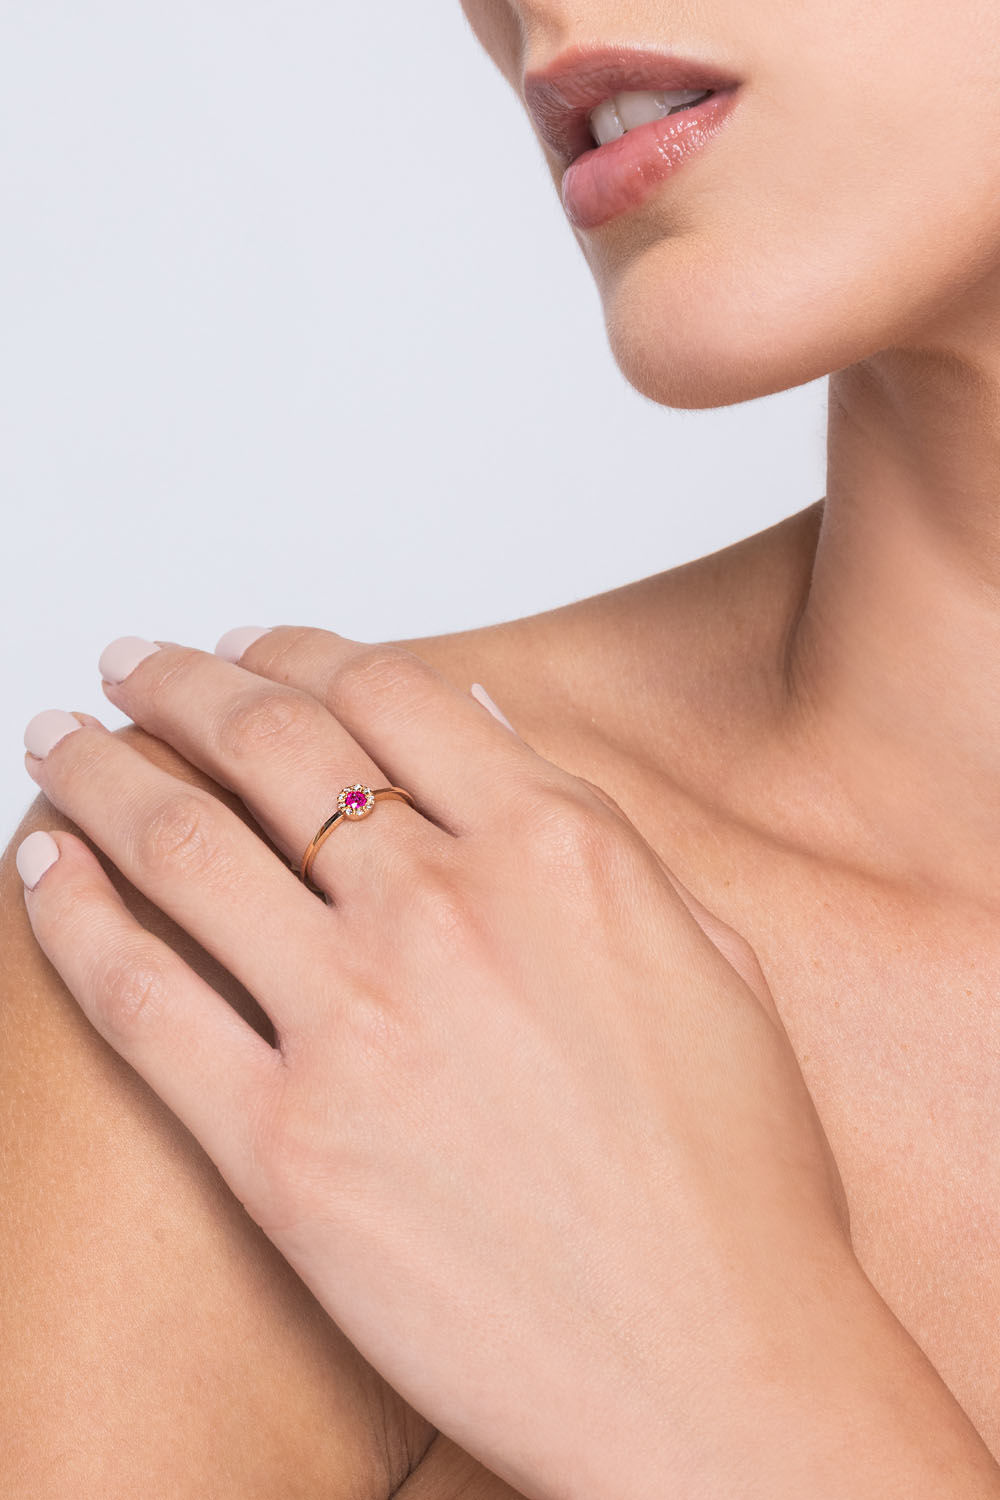 Δαχτυλίδι Gems από ροζ χρυσό 18K με ρουμπίνι και διαμάντια μπριγιάν